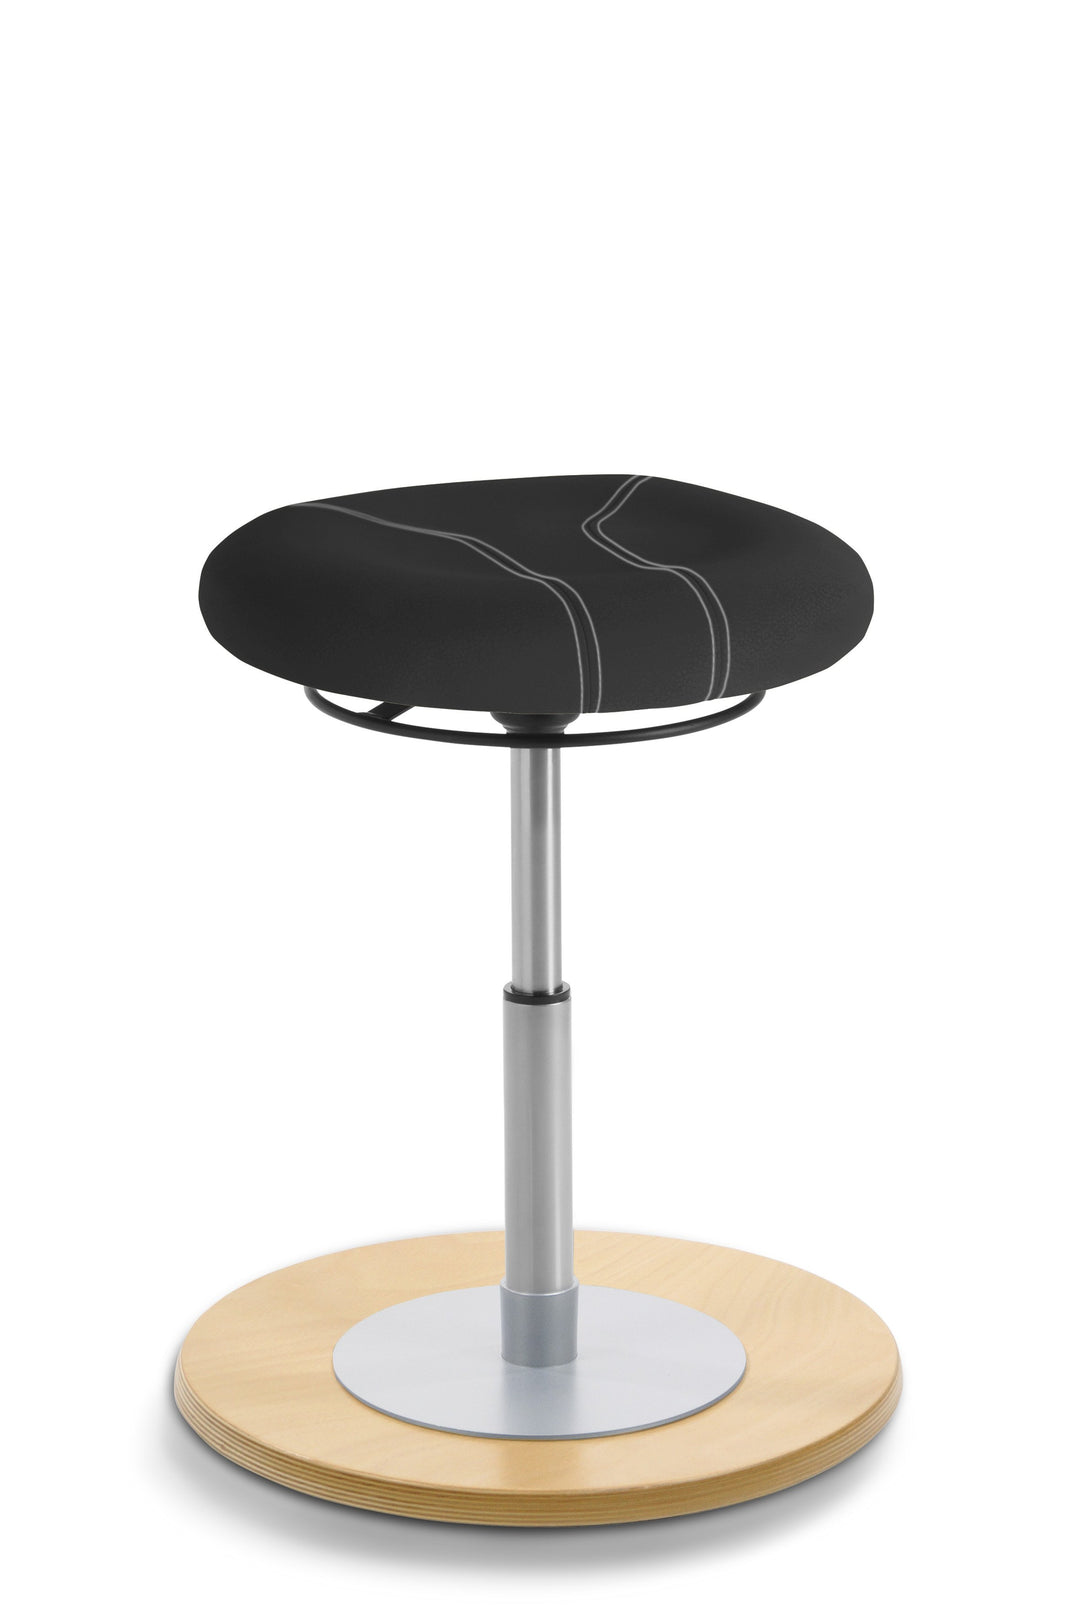 Mayer MyErgosit Taboret Krzesło Stołek balansujący płaski 37-50cm podstawa sklejka naturalna 1111 N